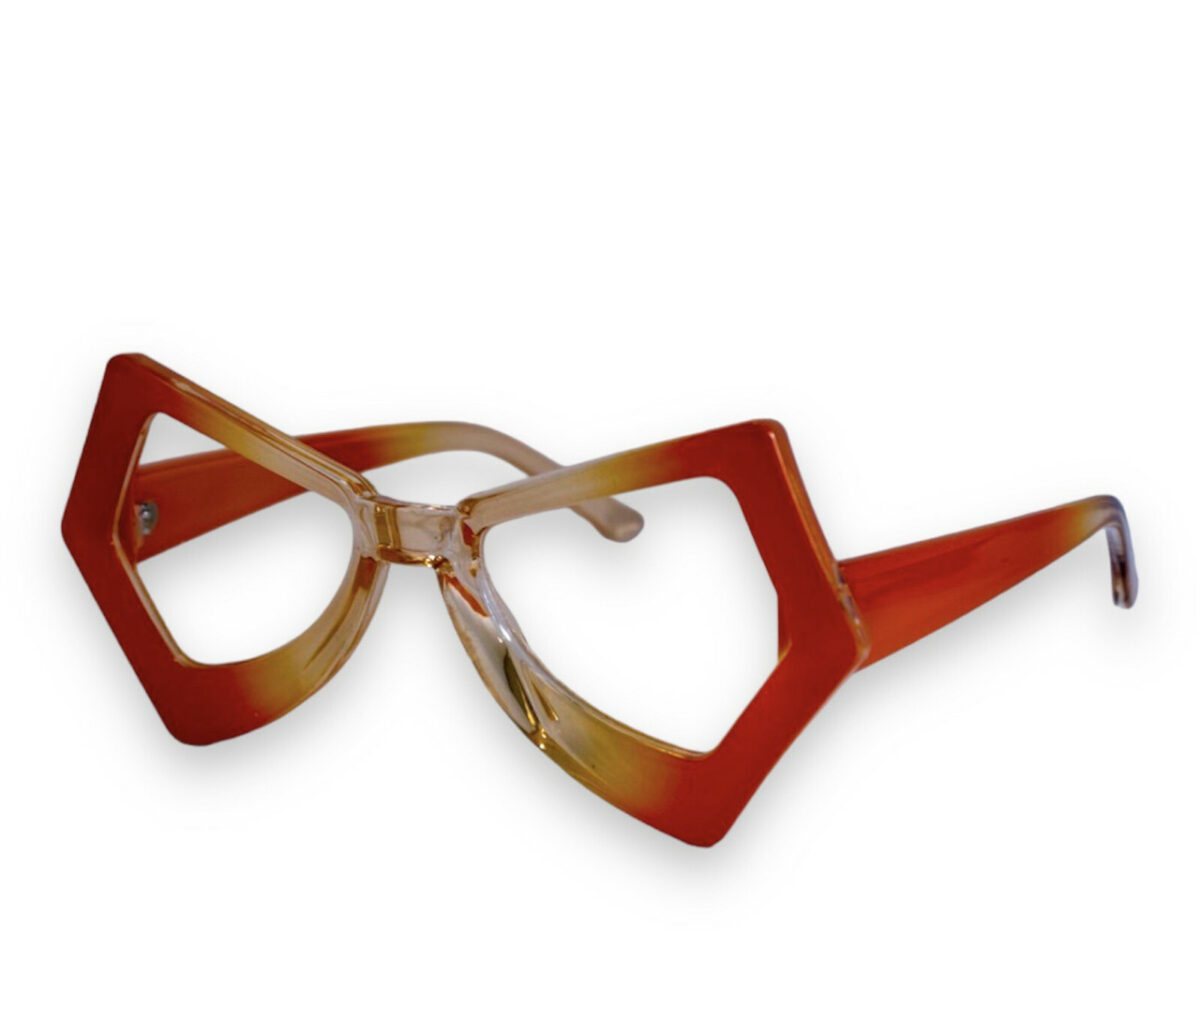 Оригінальні сонцезахисні жіночі окуляри жовтогарячі 1330-17 topseason